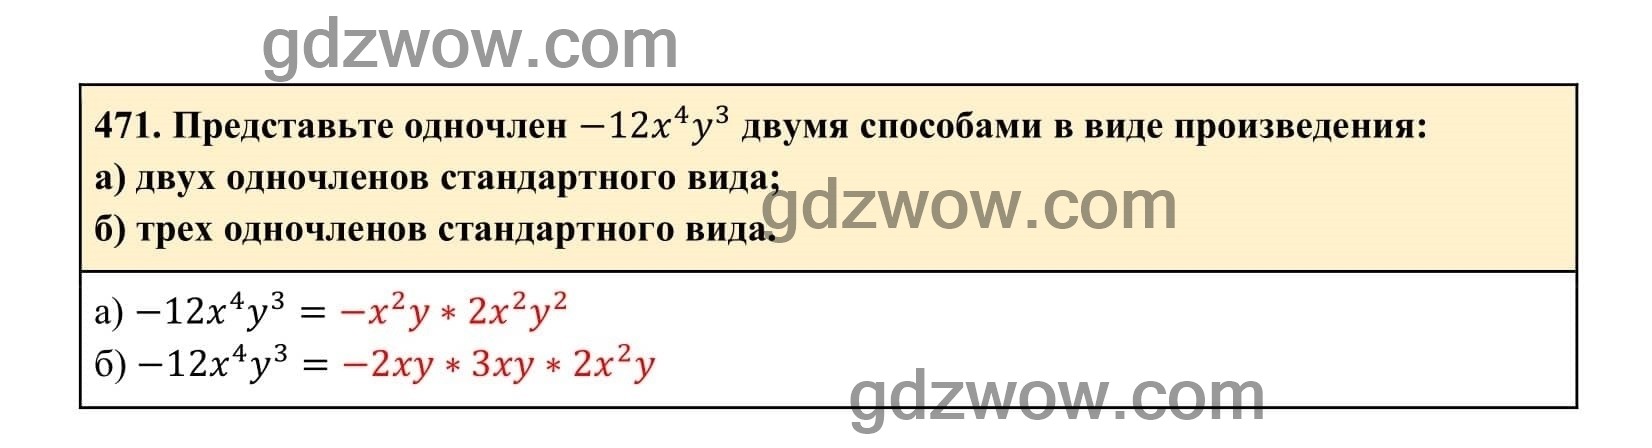 Упражнение 471 - ГДЗ по Алгебре 7 класс Учебник Макарычев (решебник) - GDZwow